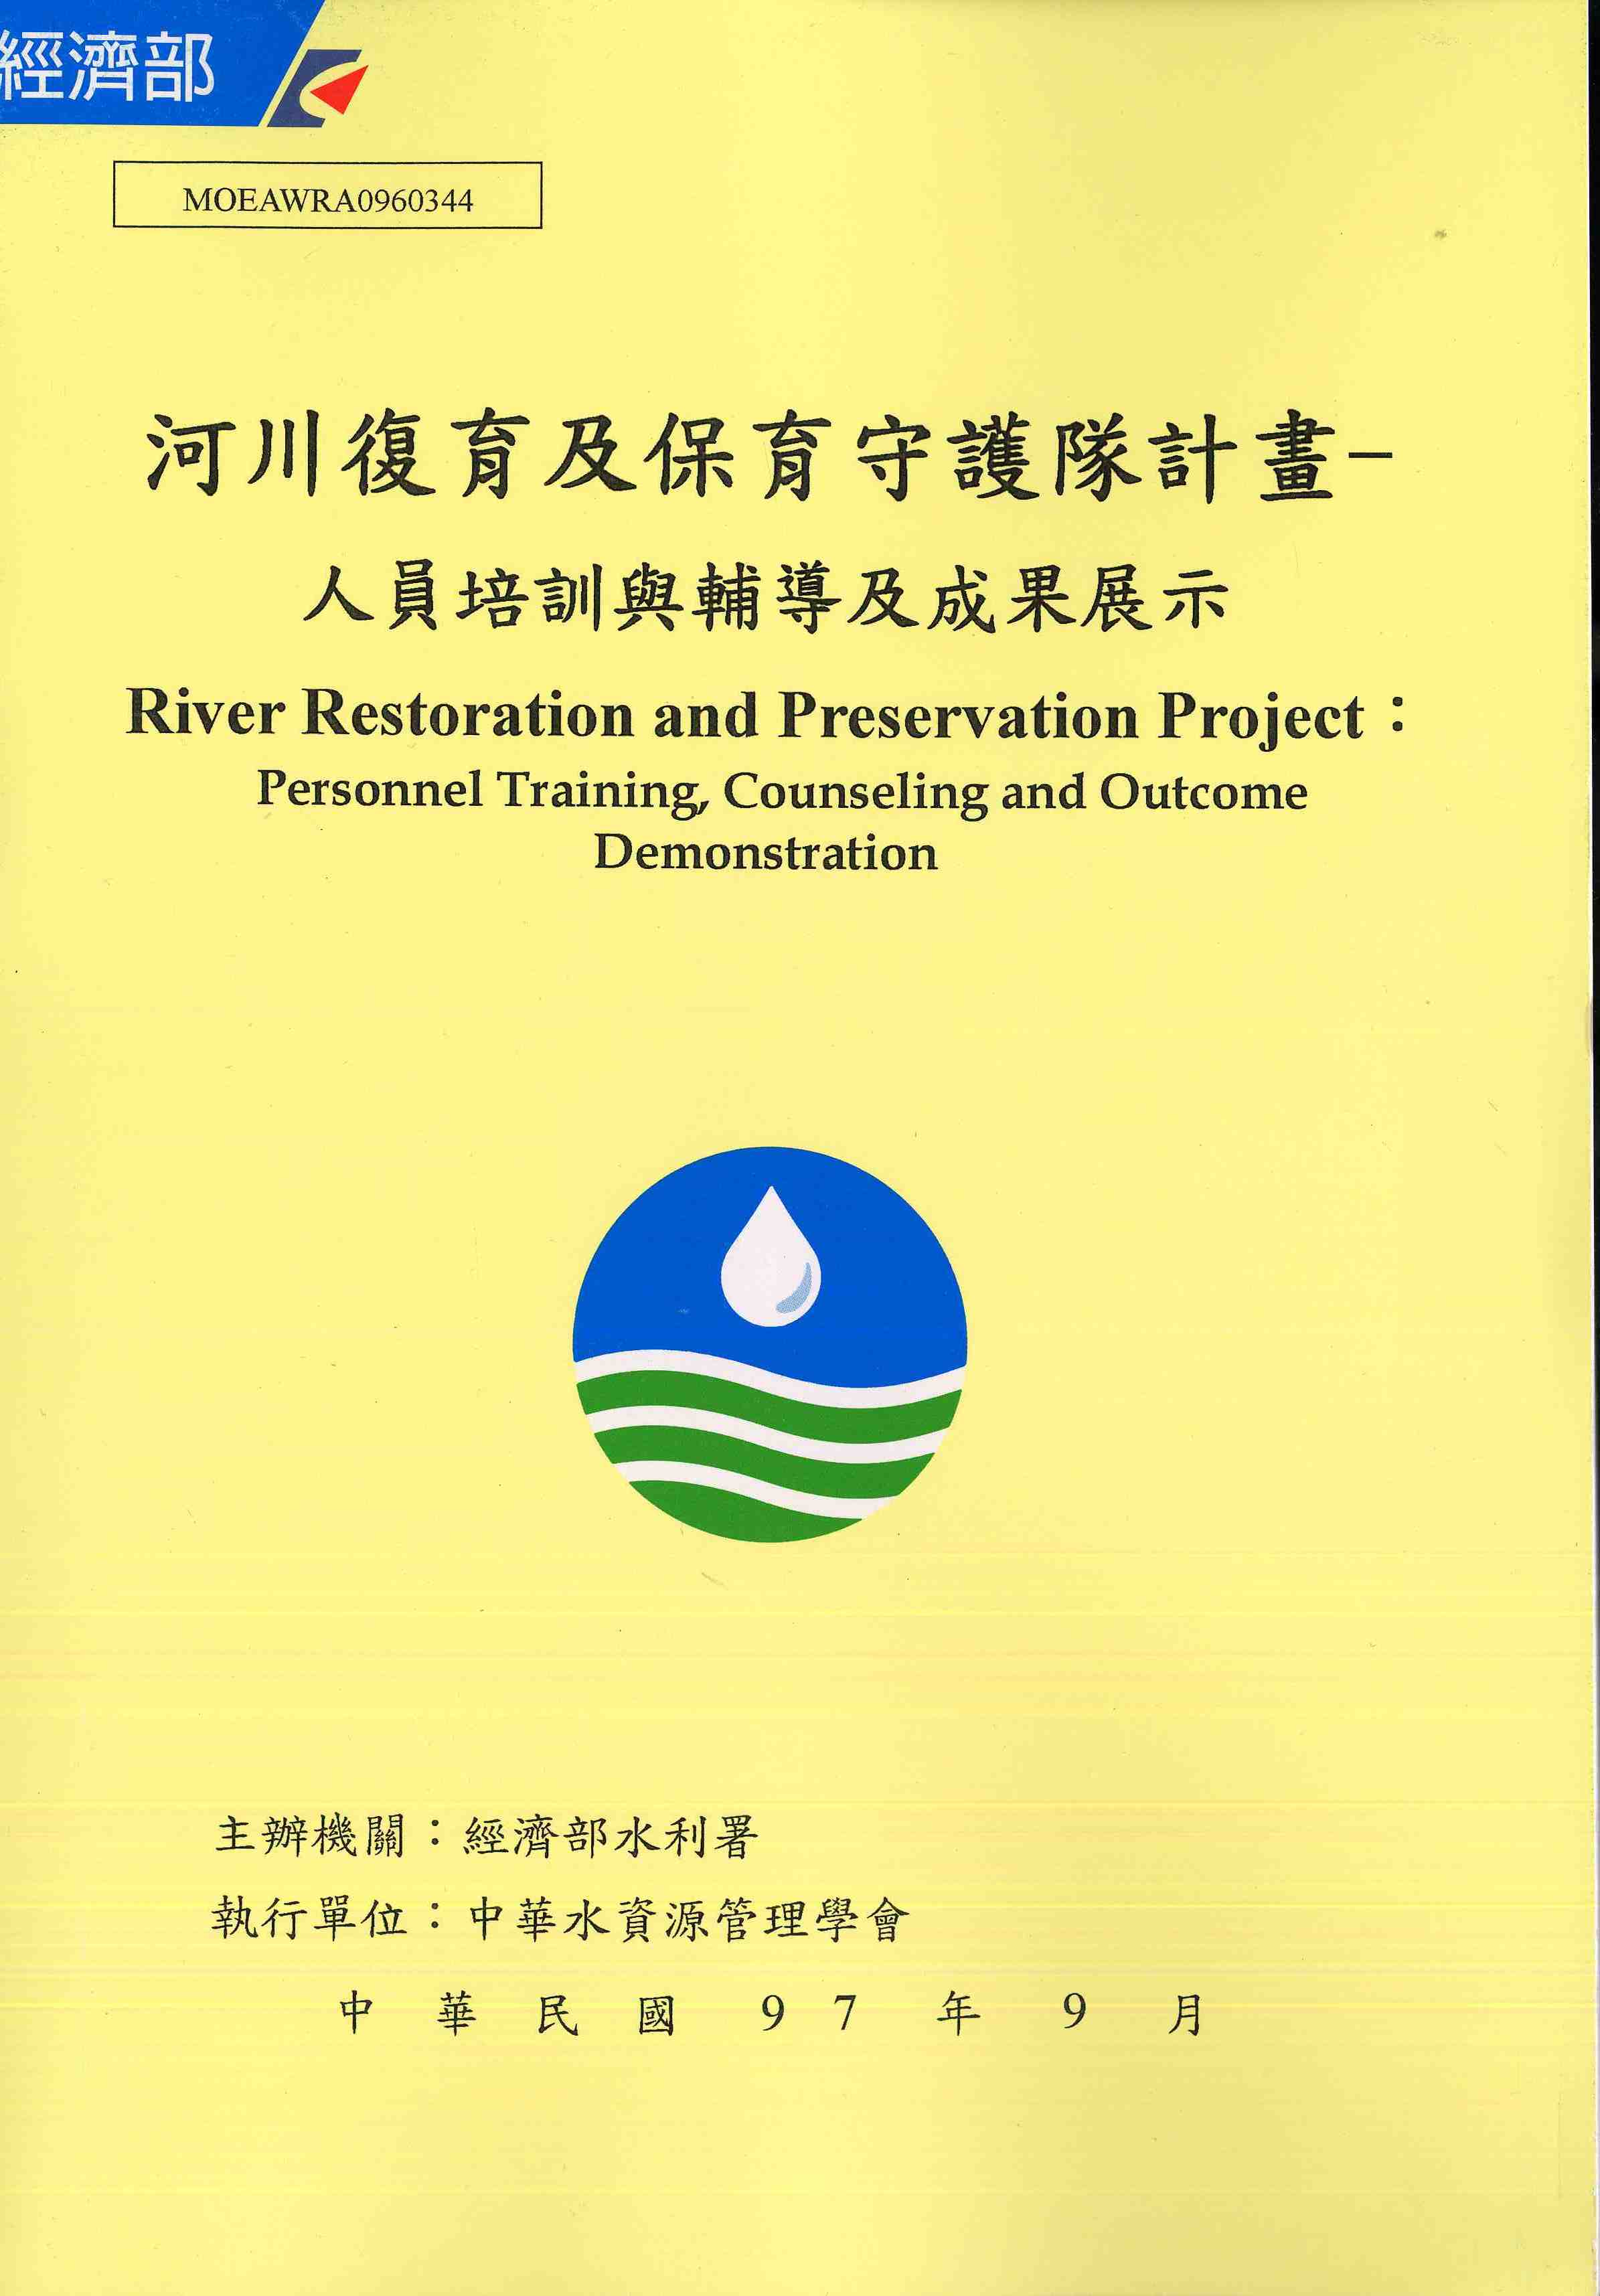 河川復育及保育守護隊計畫-人員培訓與輔導及成果展示